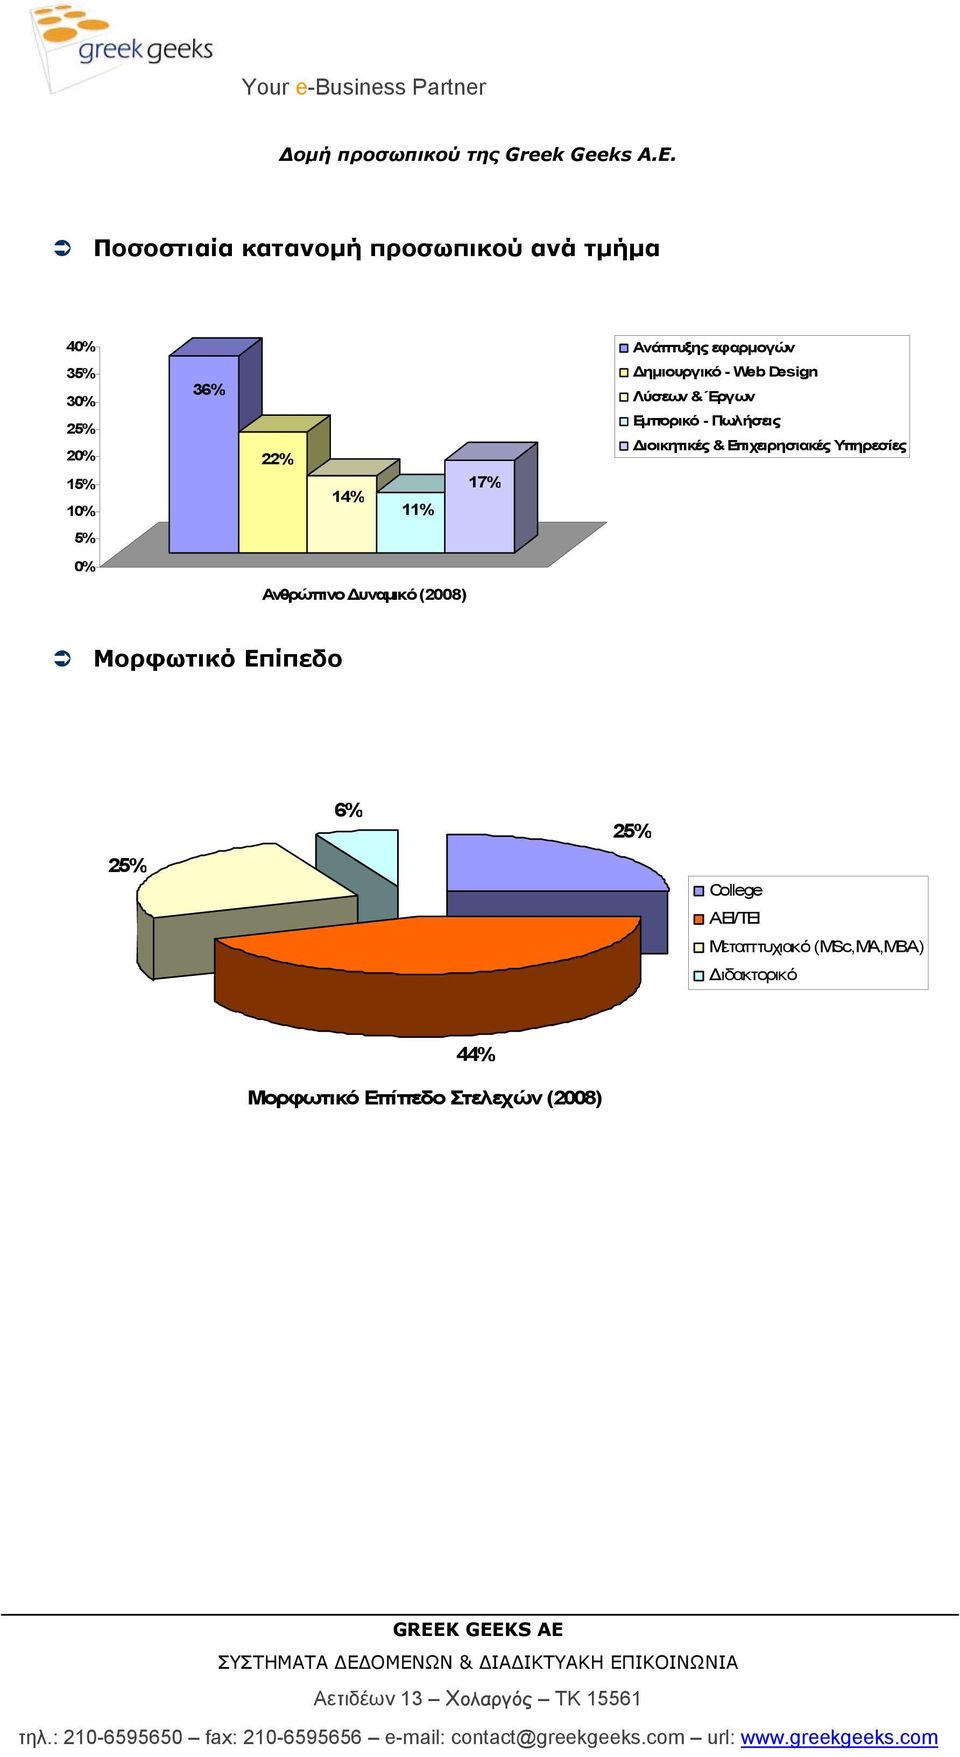 14% 11% 17% ηµιουργικό - Web Design Λύσεων & Έργων Εµπορικό - Πωλήσεις ιοικητικές &